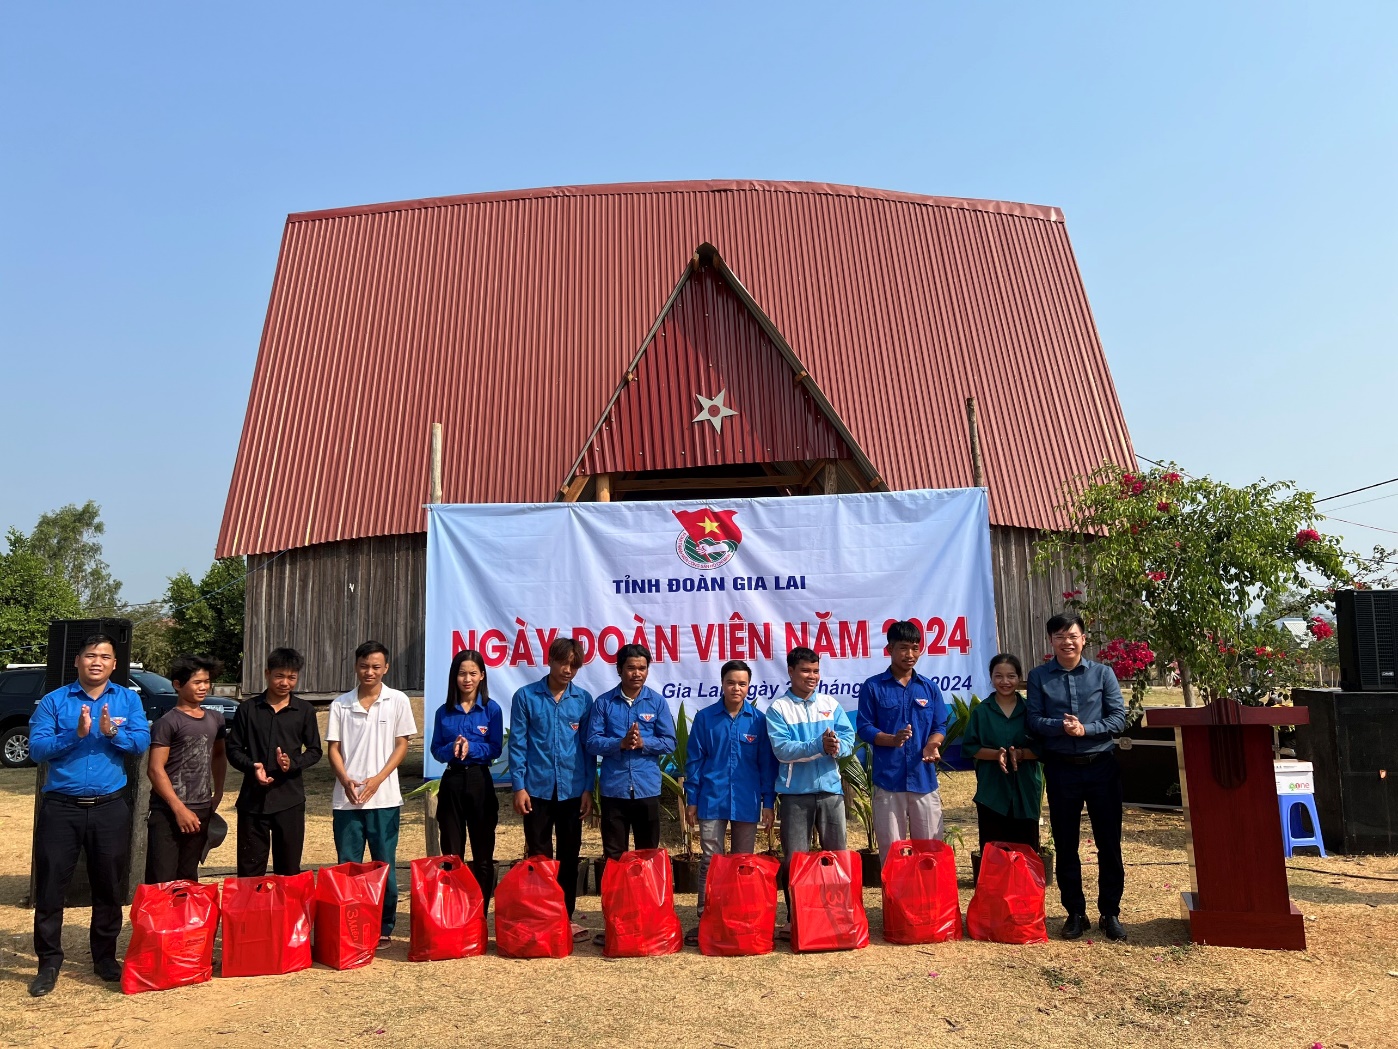 Article Tỉnh đoàn Gia Lai tổ chức “Ngày đoàn viên” năm 2024 tại thôn King Pêng, xã Chư A Thai, huyện Phú Thiện